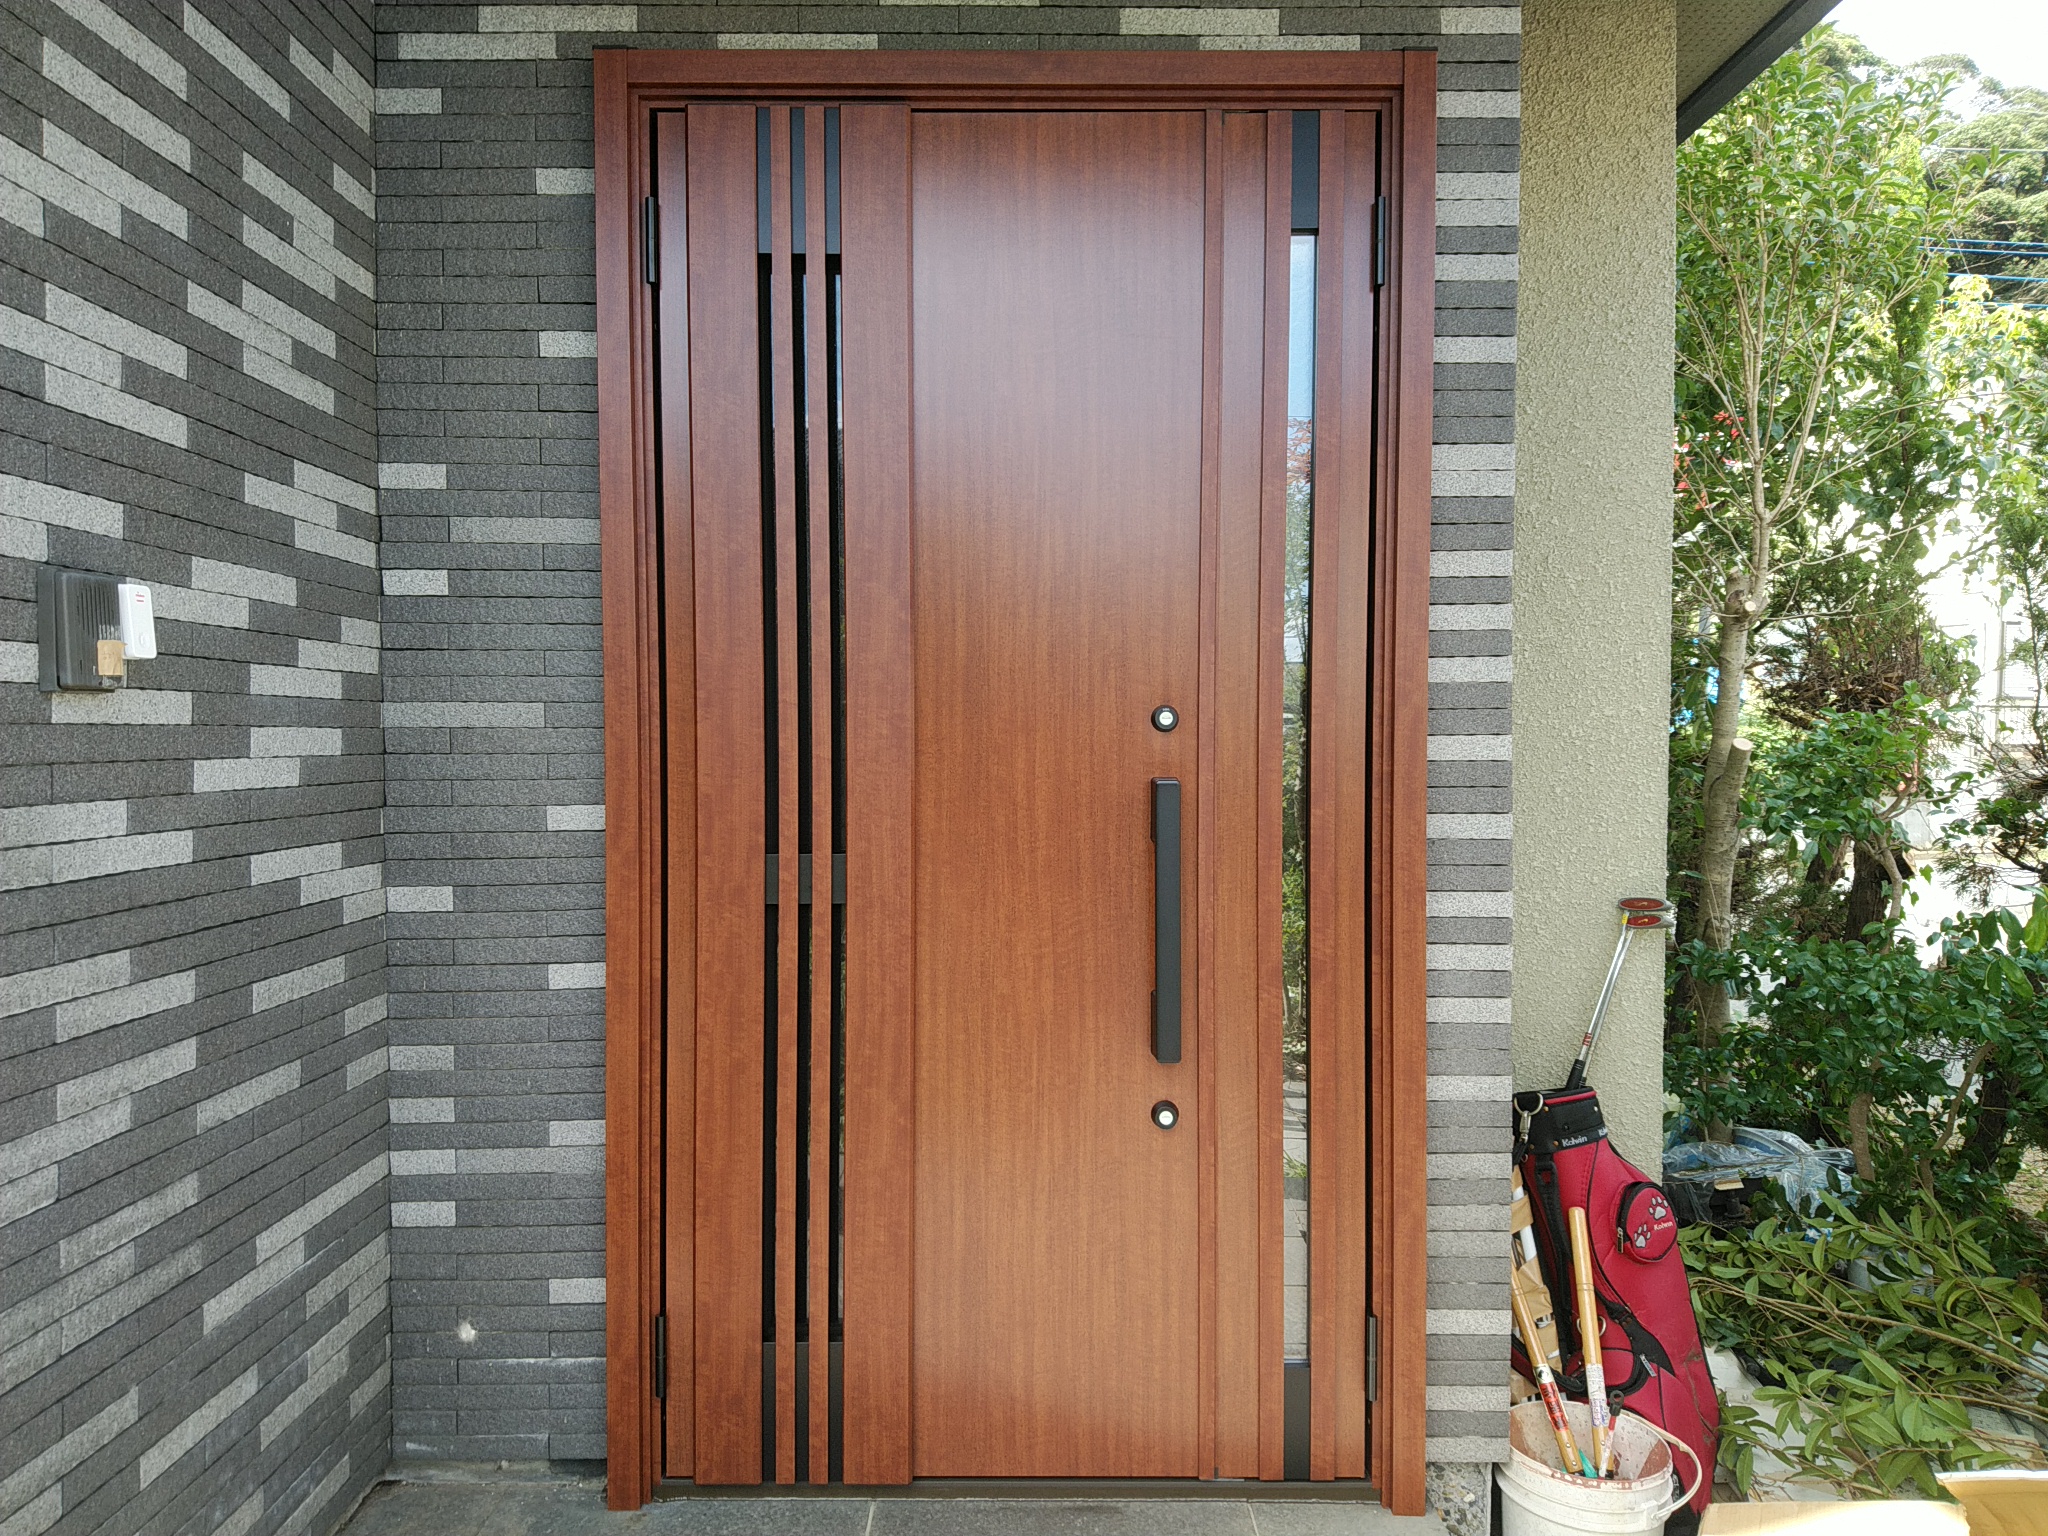 木目調の採風ドアで夏を涼しく【LIXILリシェントM83型】玄関ドアのリフォームなら玄関ドアマイスターへお任せください